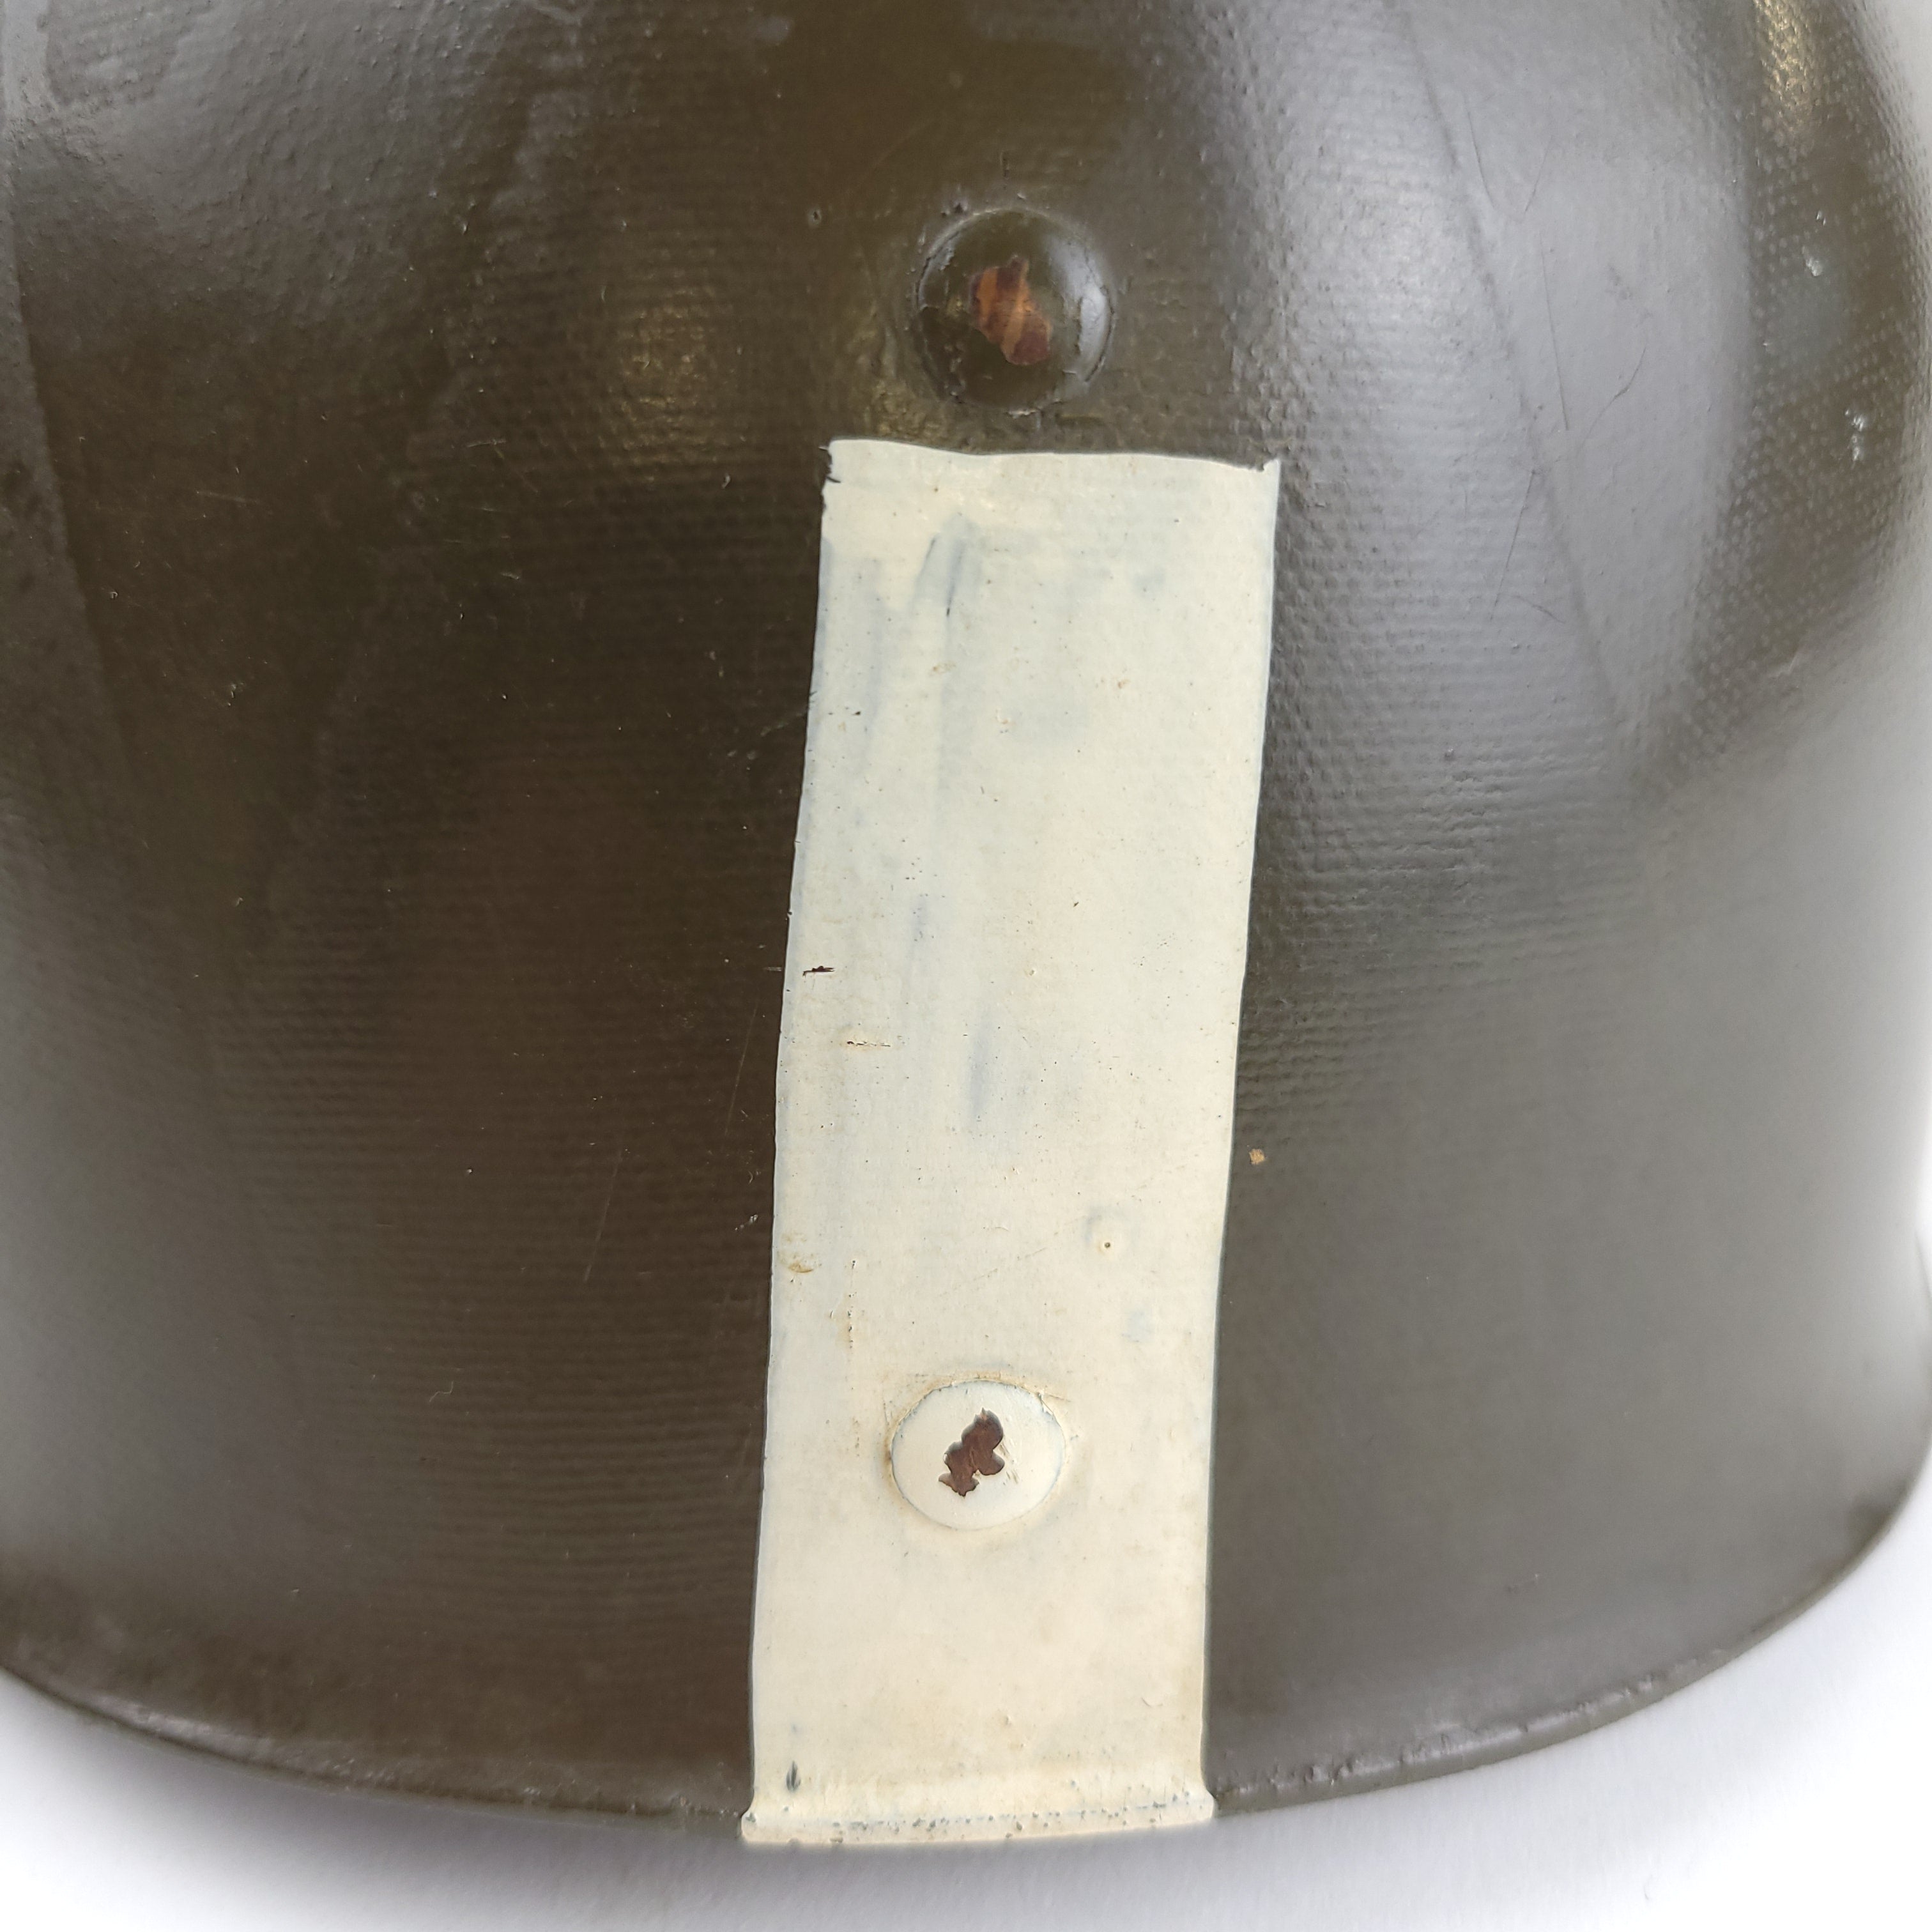 Doublure de casque M1 - 69th Inf Div - 272nd Inf Reg - 1er Lt - Original